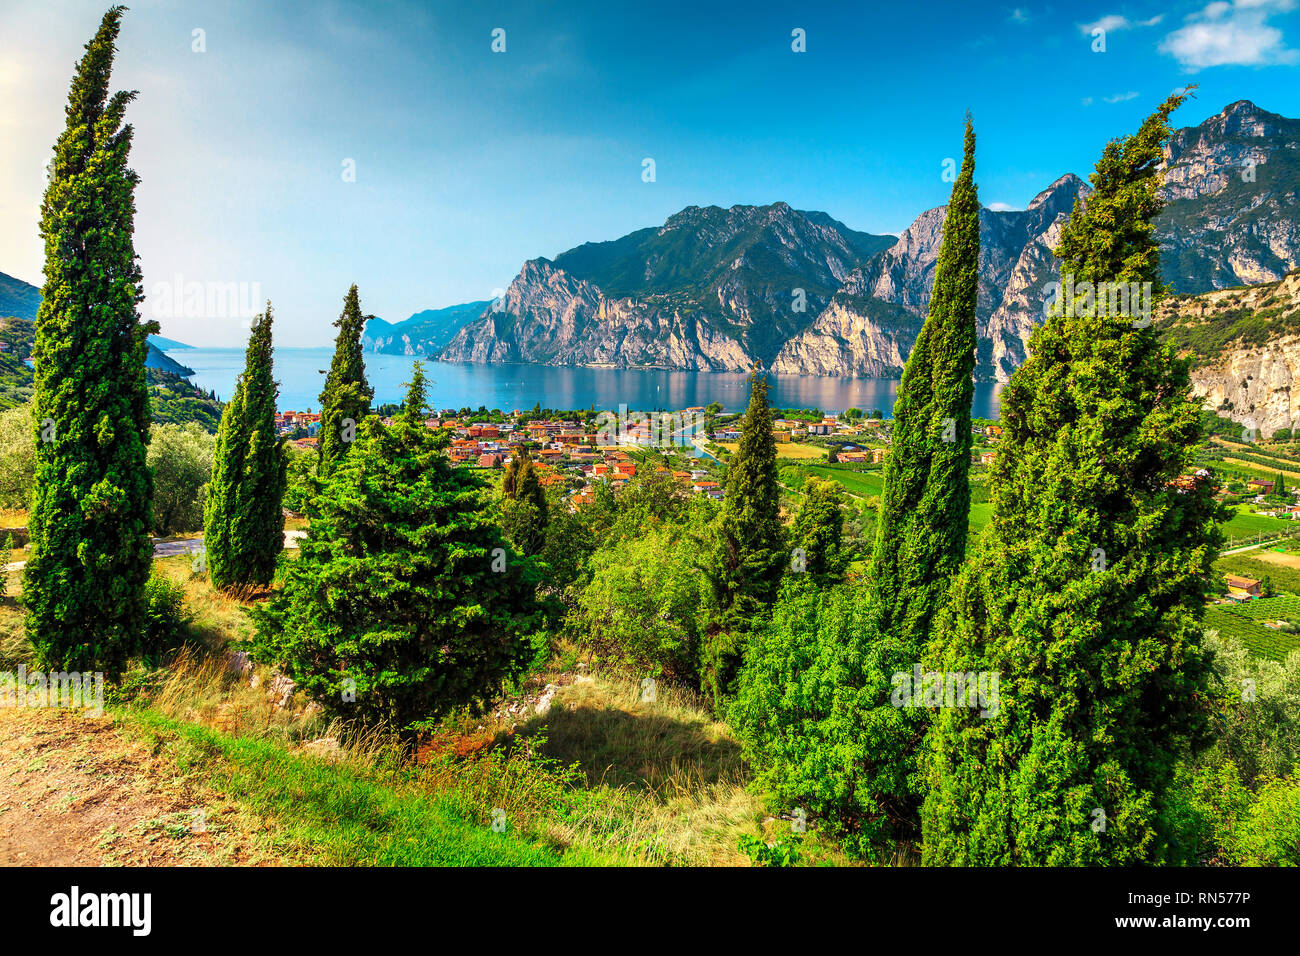 Destination de vacances incroyable avec le lac de Garde et de hautes montagnes, Torbole, Italie, Europe Banque D'Images